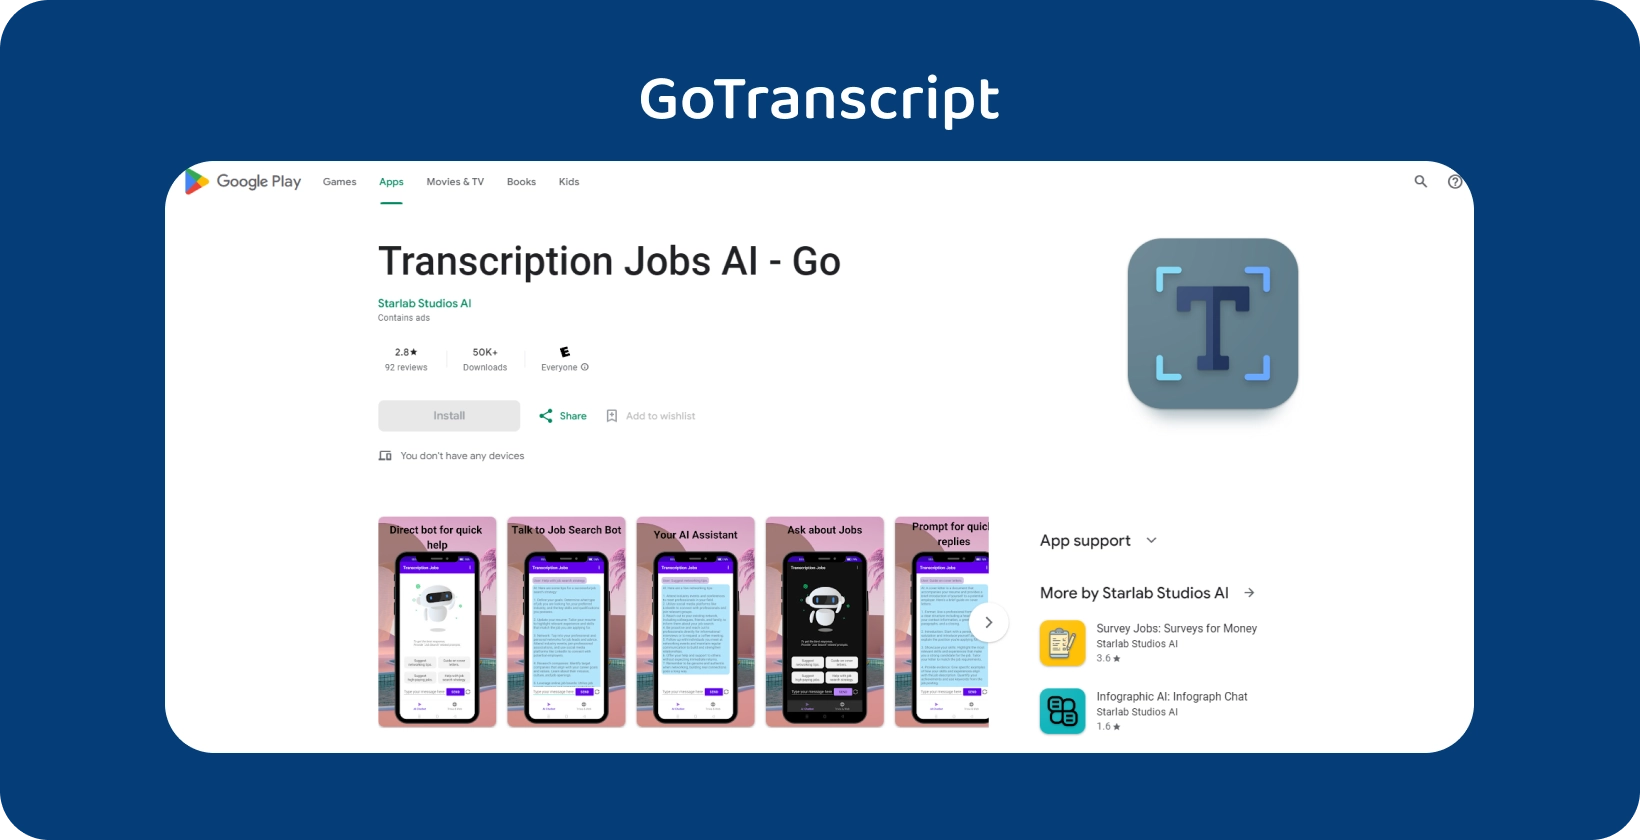 GoTranscript programą "Google Play", skirtą transkripcijos užduotims valdyti naudojant intuityvią mobiliąją sąsają.